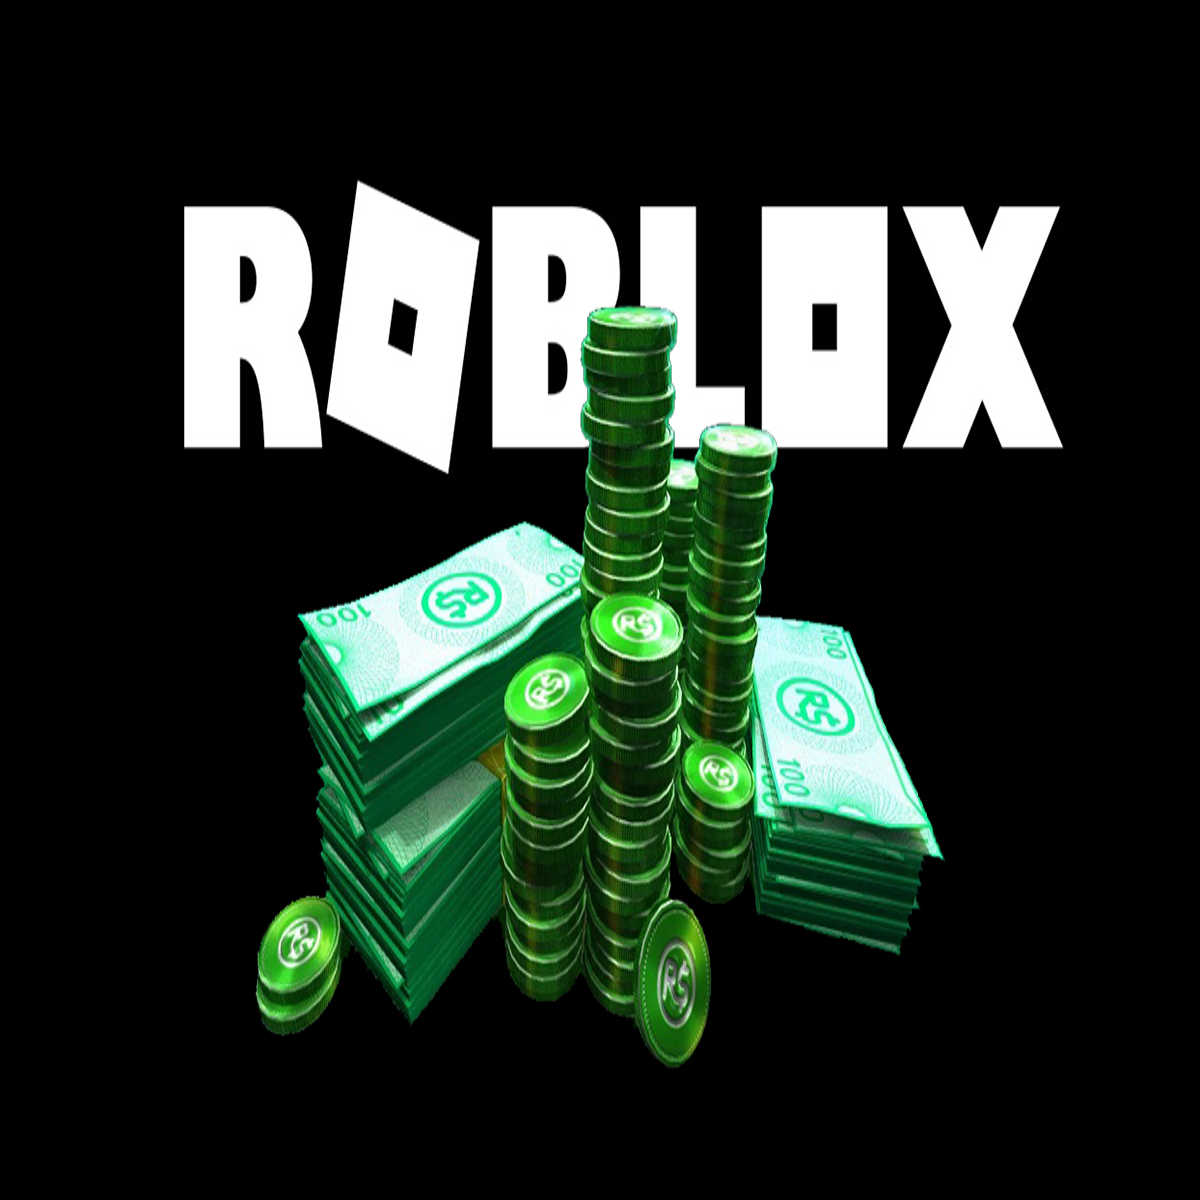 Roblox Free Cash Flow - FourWeekMBA